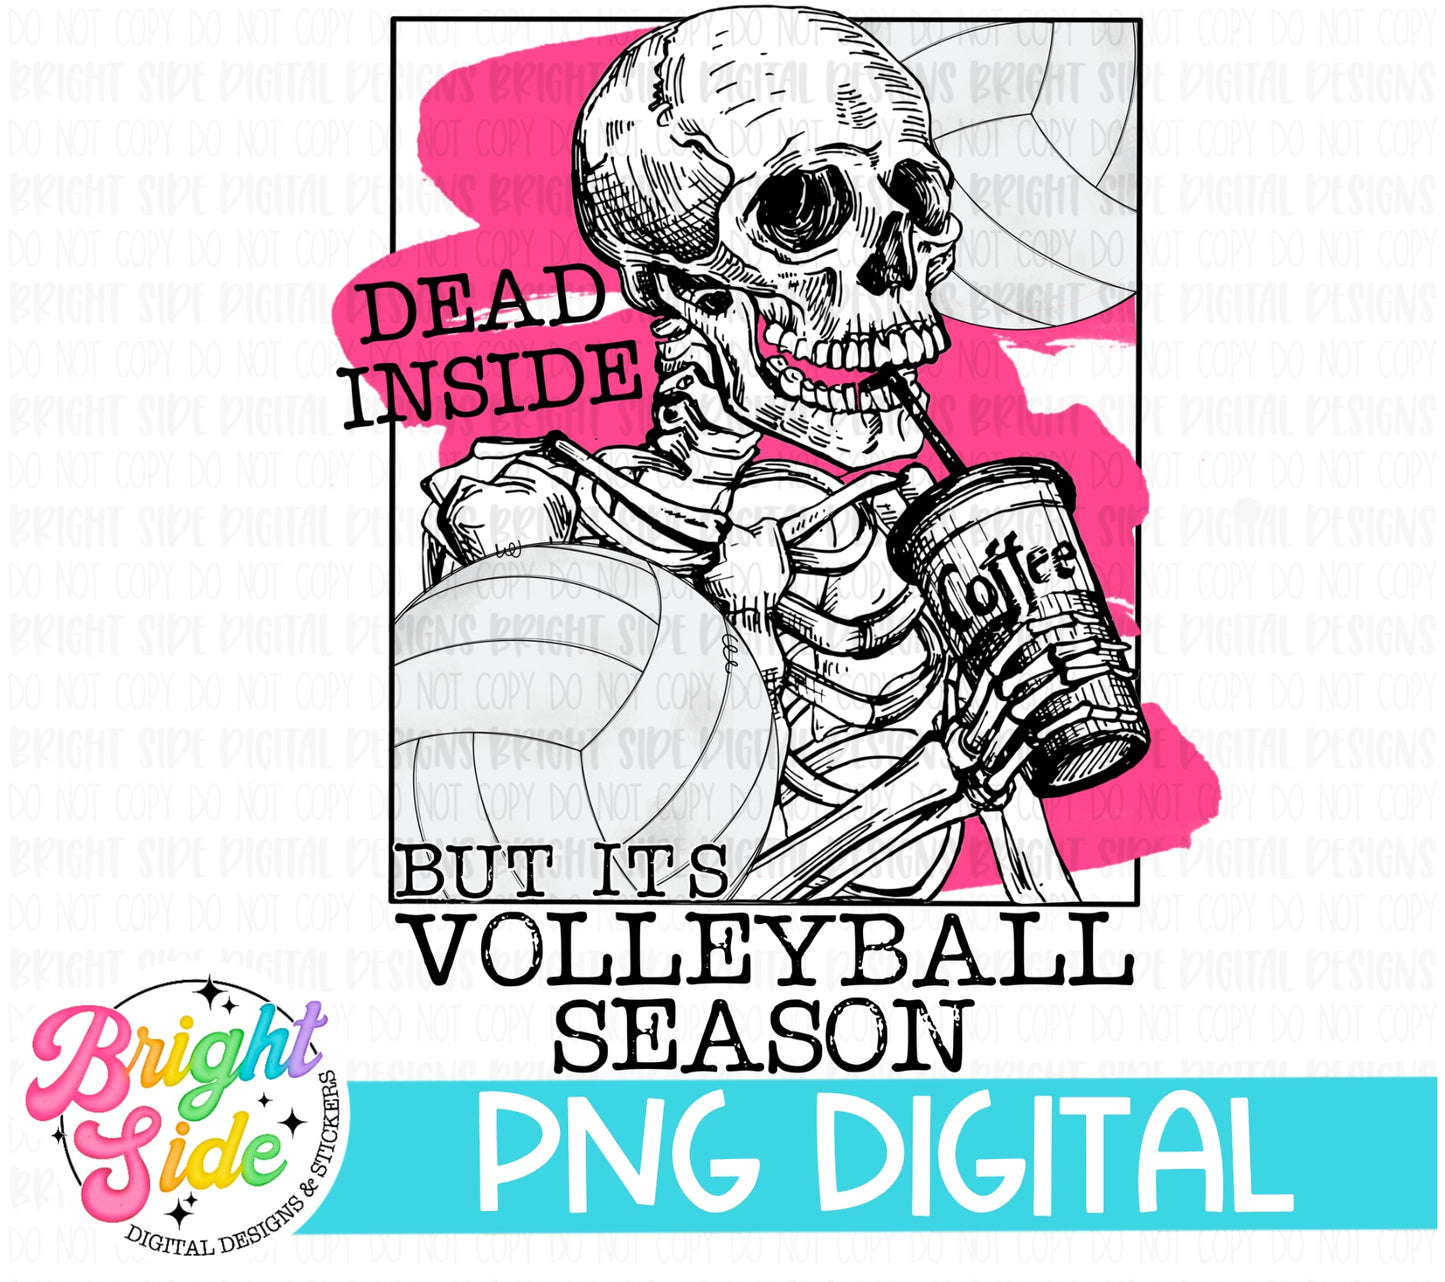 Dead inside but it’s volleyball season